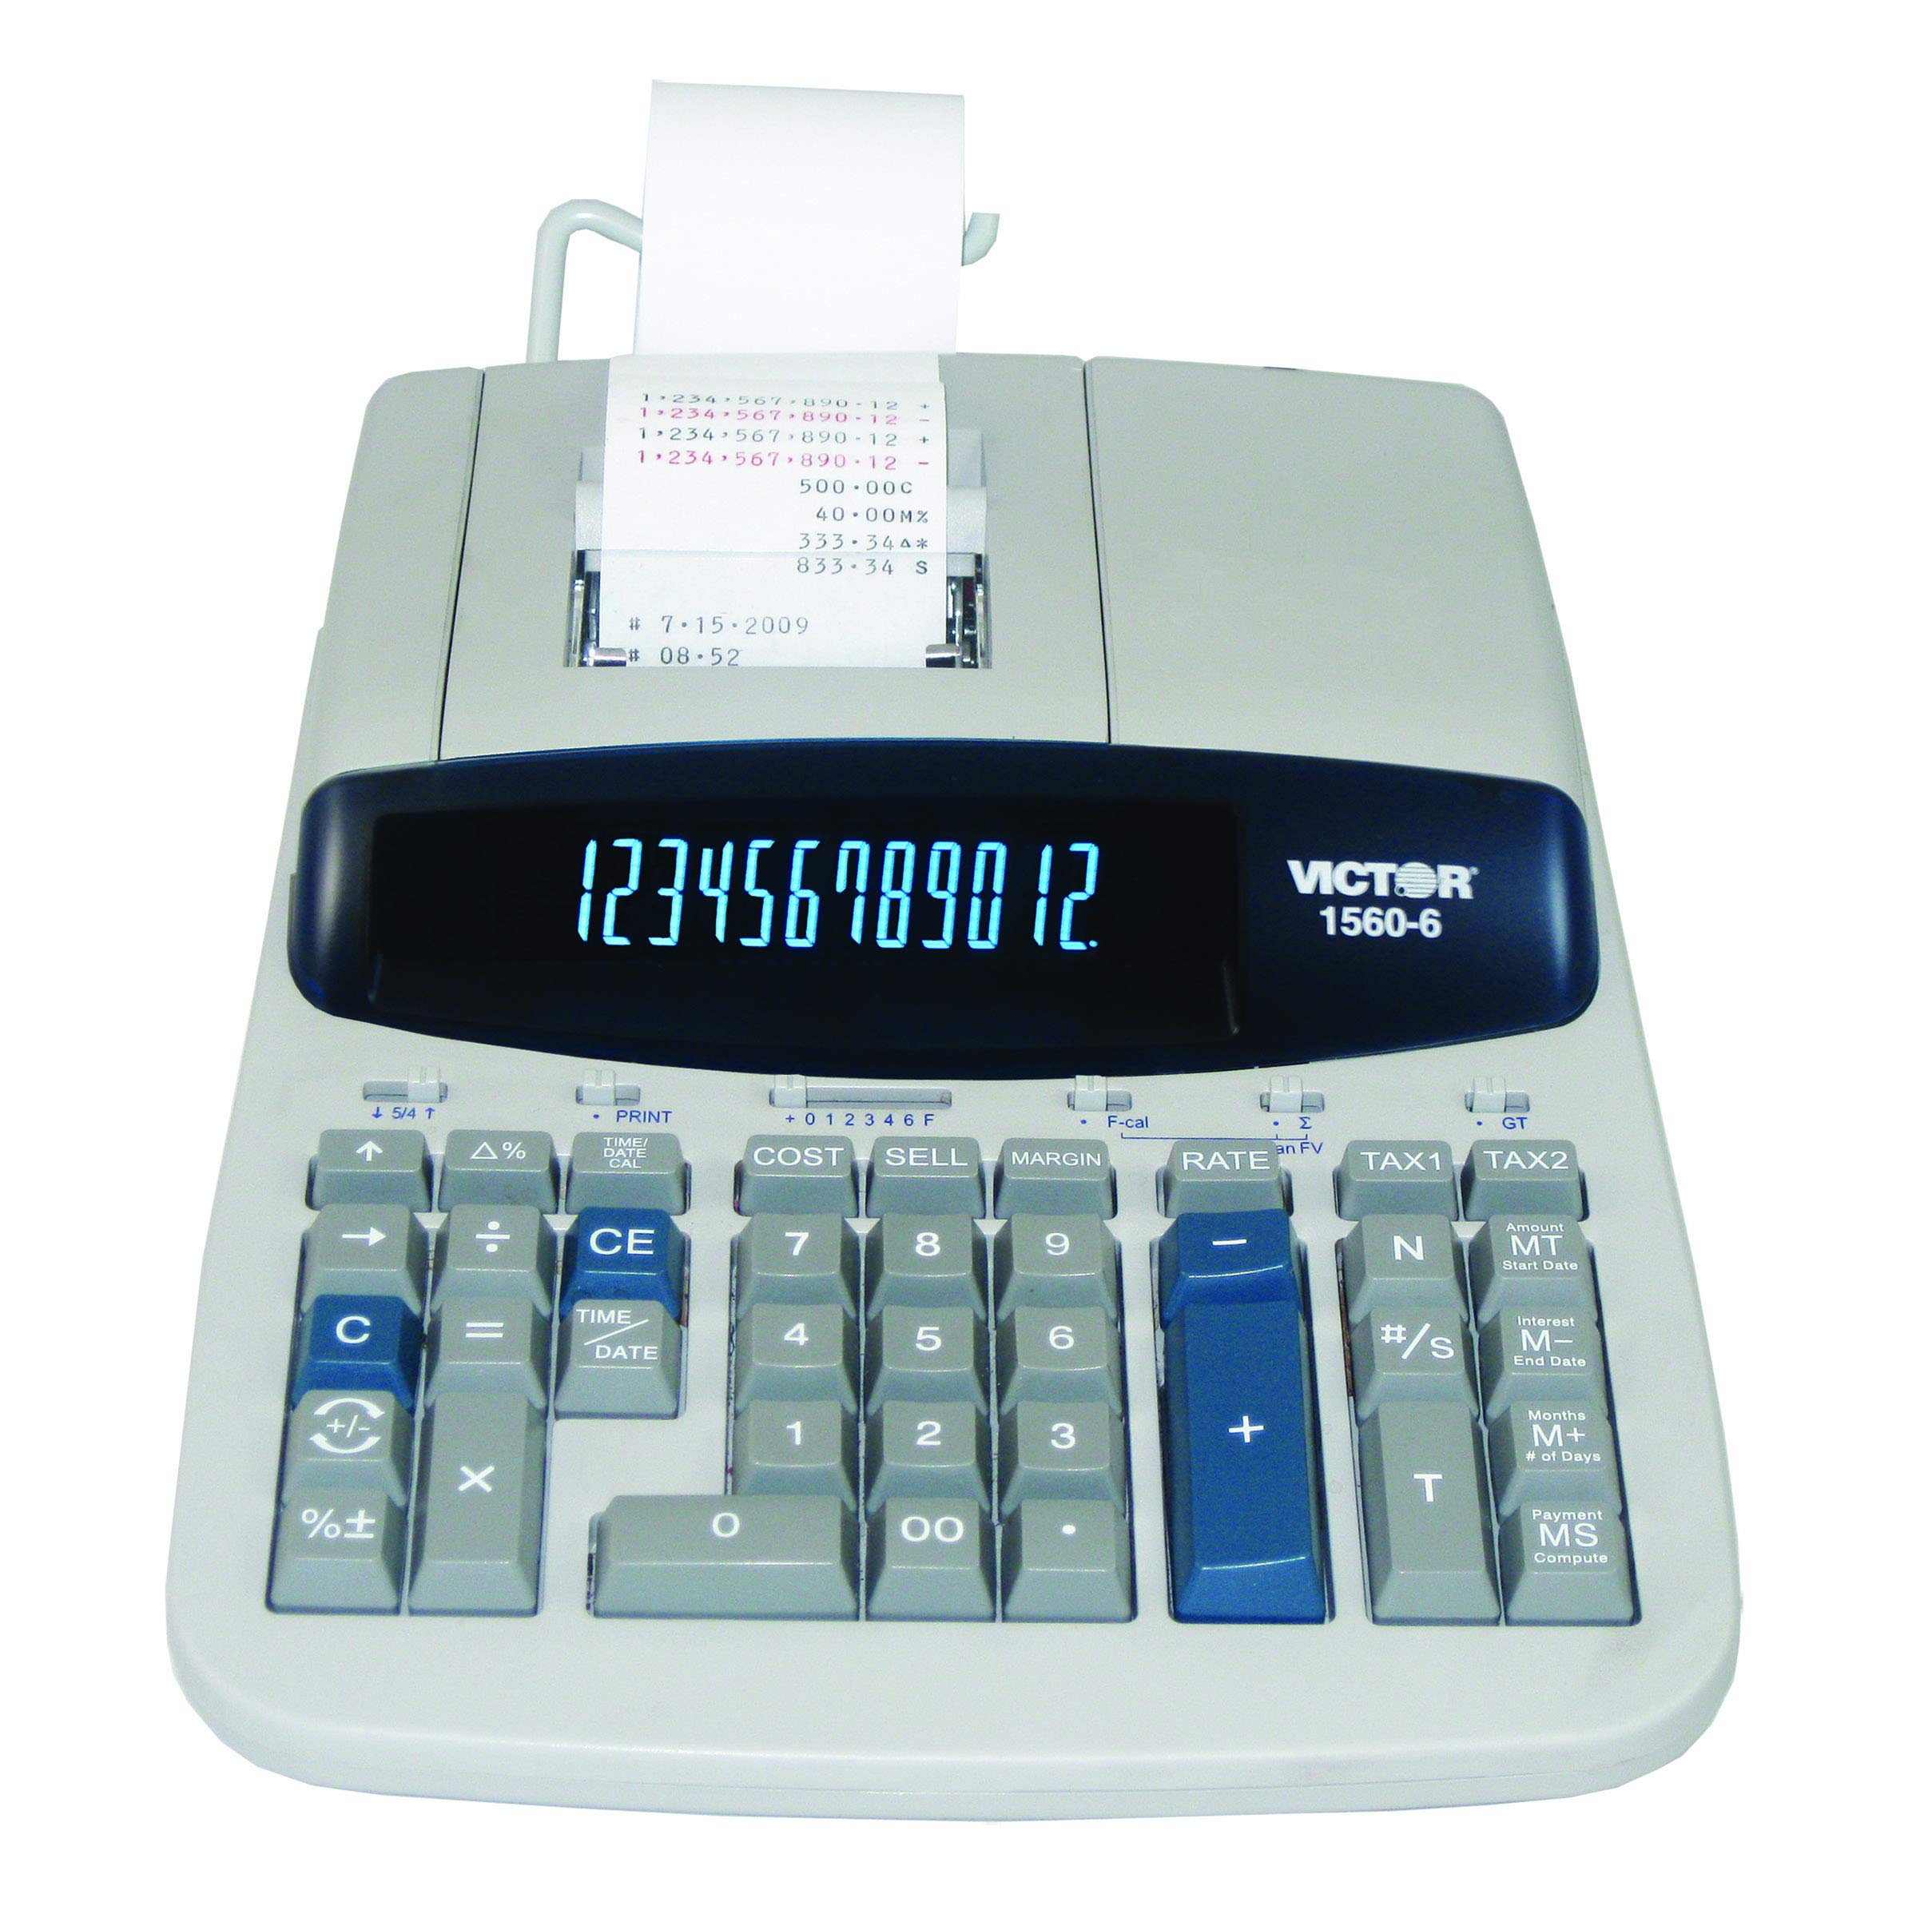  Victor 1560-6 12-разрядный калькулятор коммерческой печати для тяжелых условий эксплуатации с большим дисплеем и...